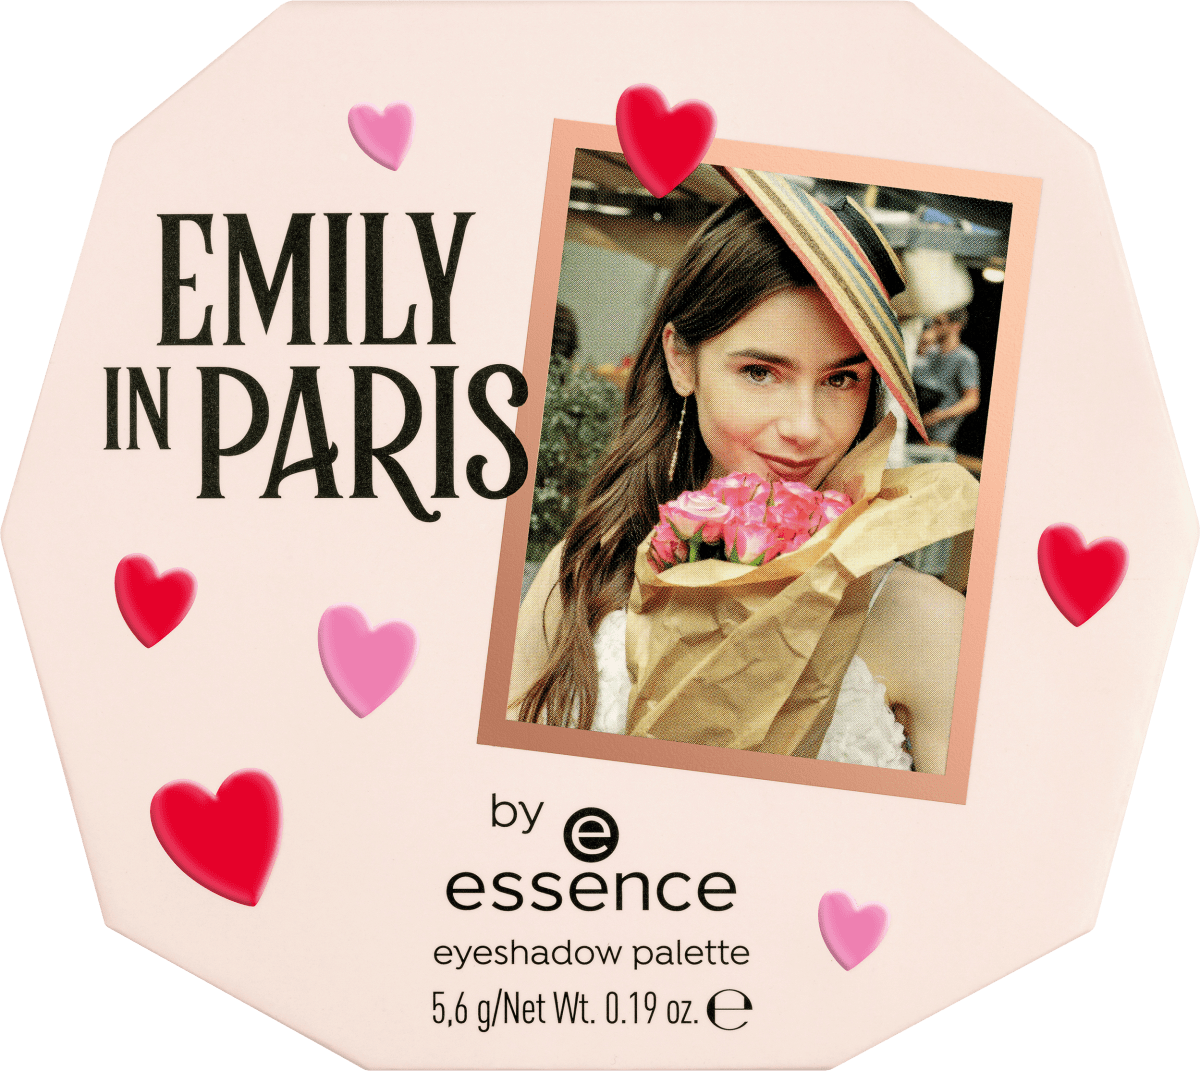 günstig 5,6 essence At g Eiffel Emily online The Tower, Paris kaufen in Lidschattenpalette Me Meet by essence dauerhaft 01